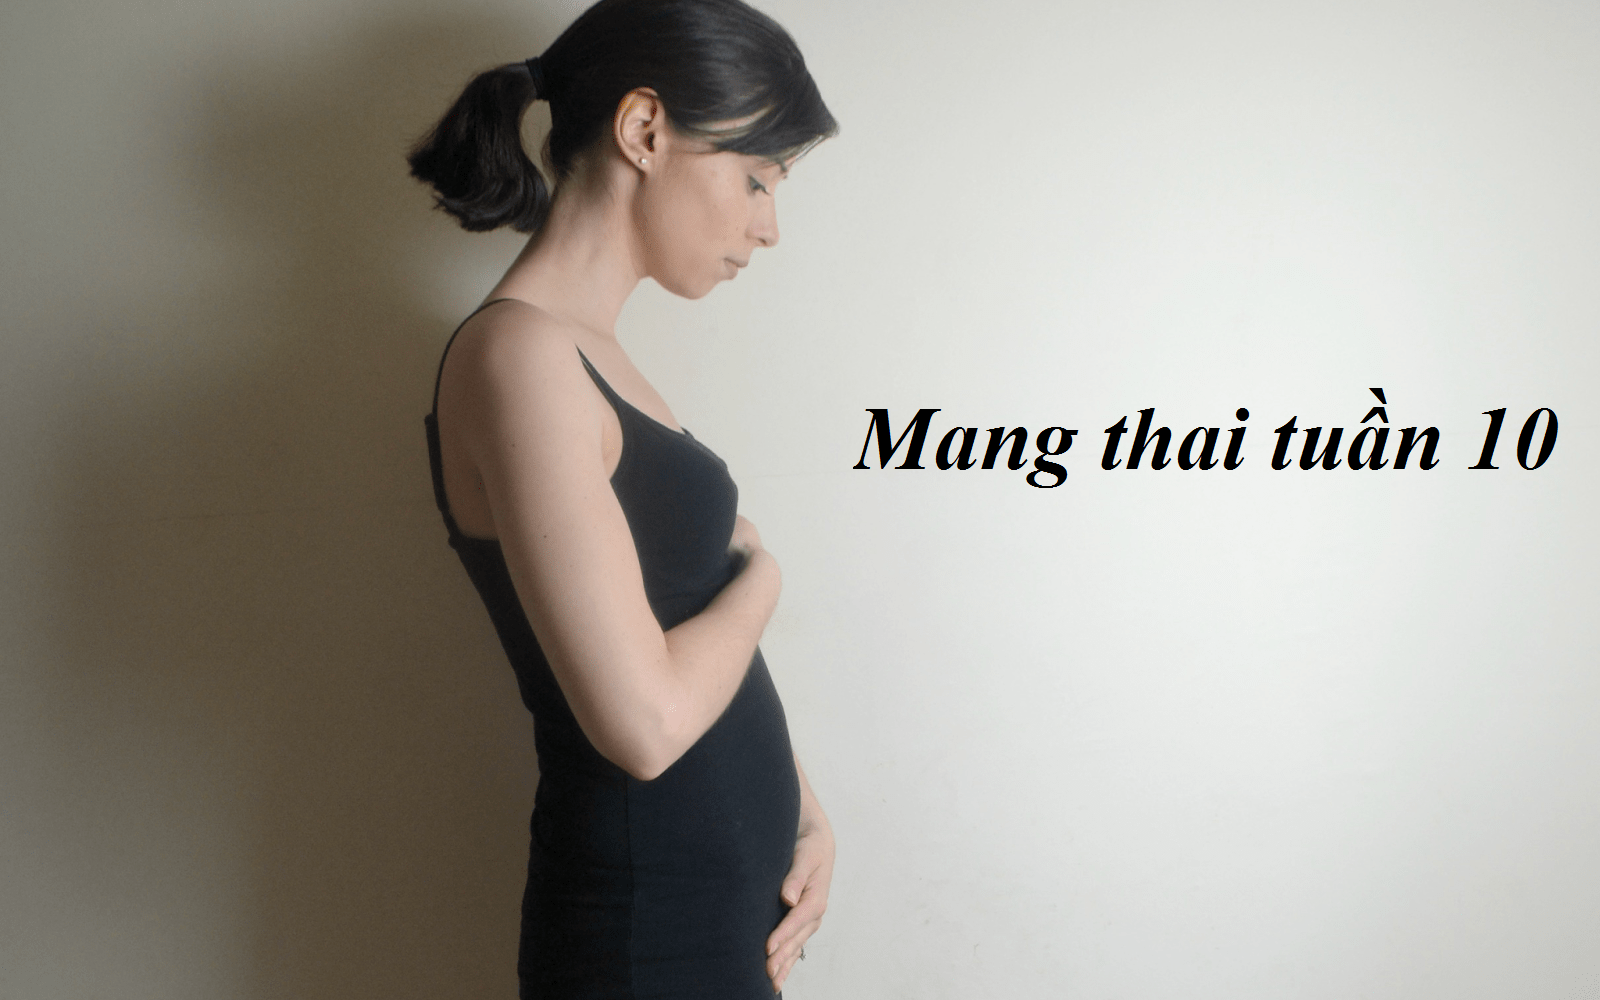 Mang thai tuần 10: Cảm giác buồn nôn và mệt mỏi sẽ dần biến mất